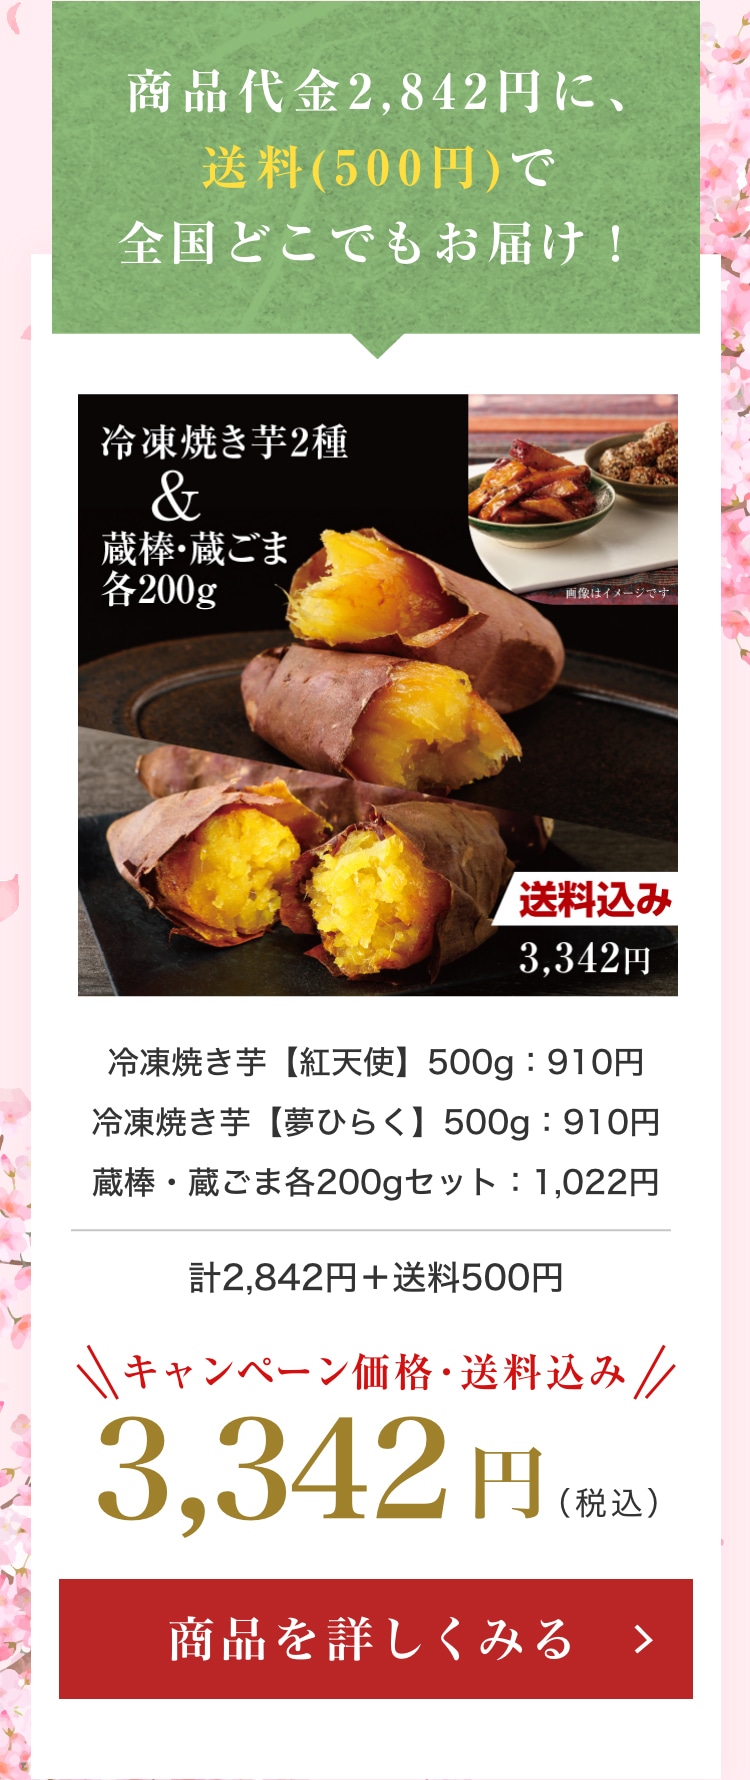 冷凍焼き芋紅天使500g + 冷凍焼き芋夢ひらく500g + 大学芋(蔵棒・蔵ごま)セット